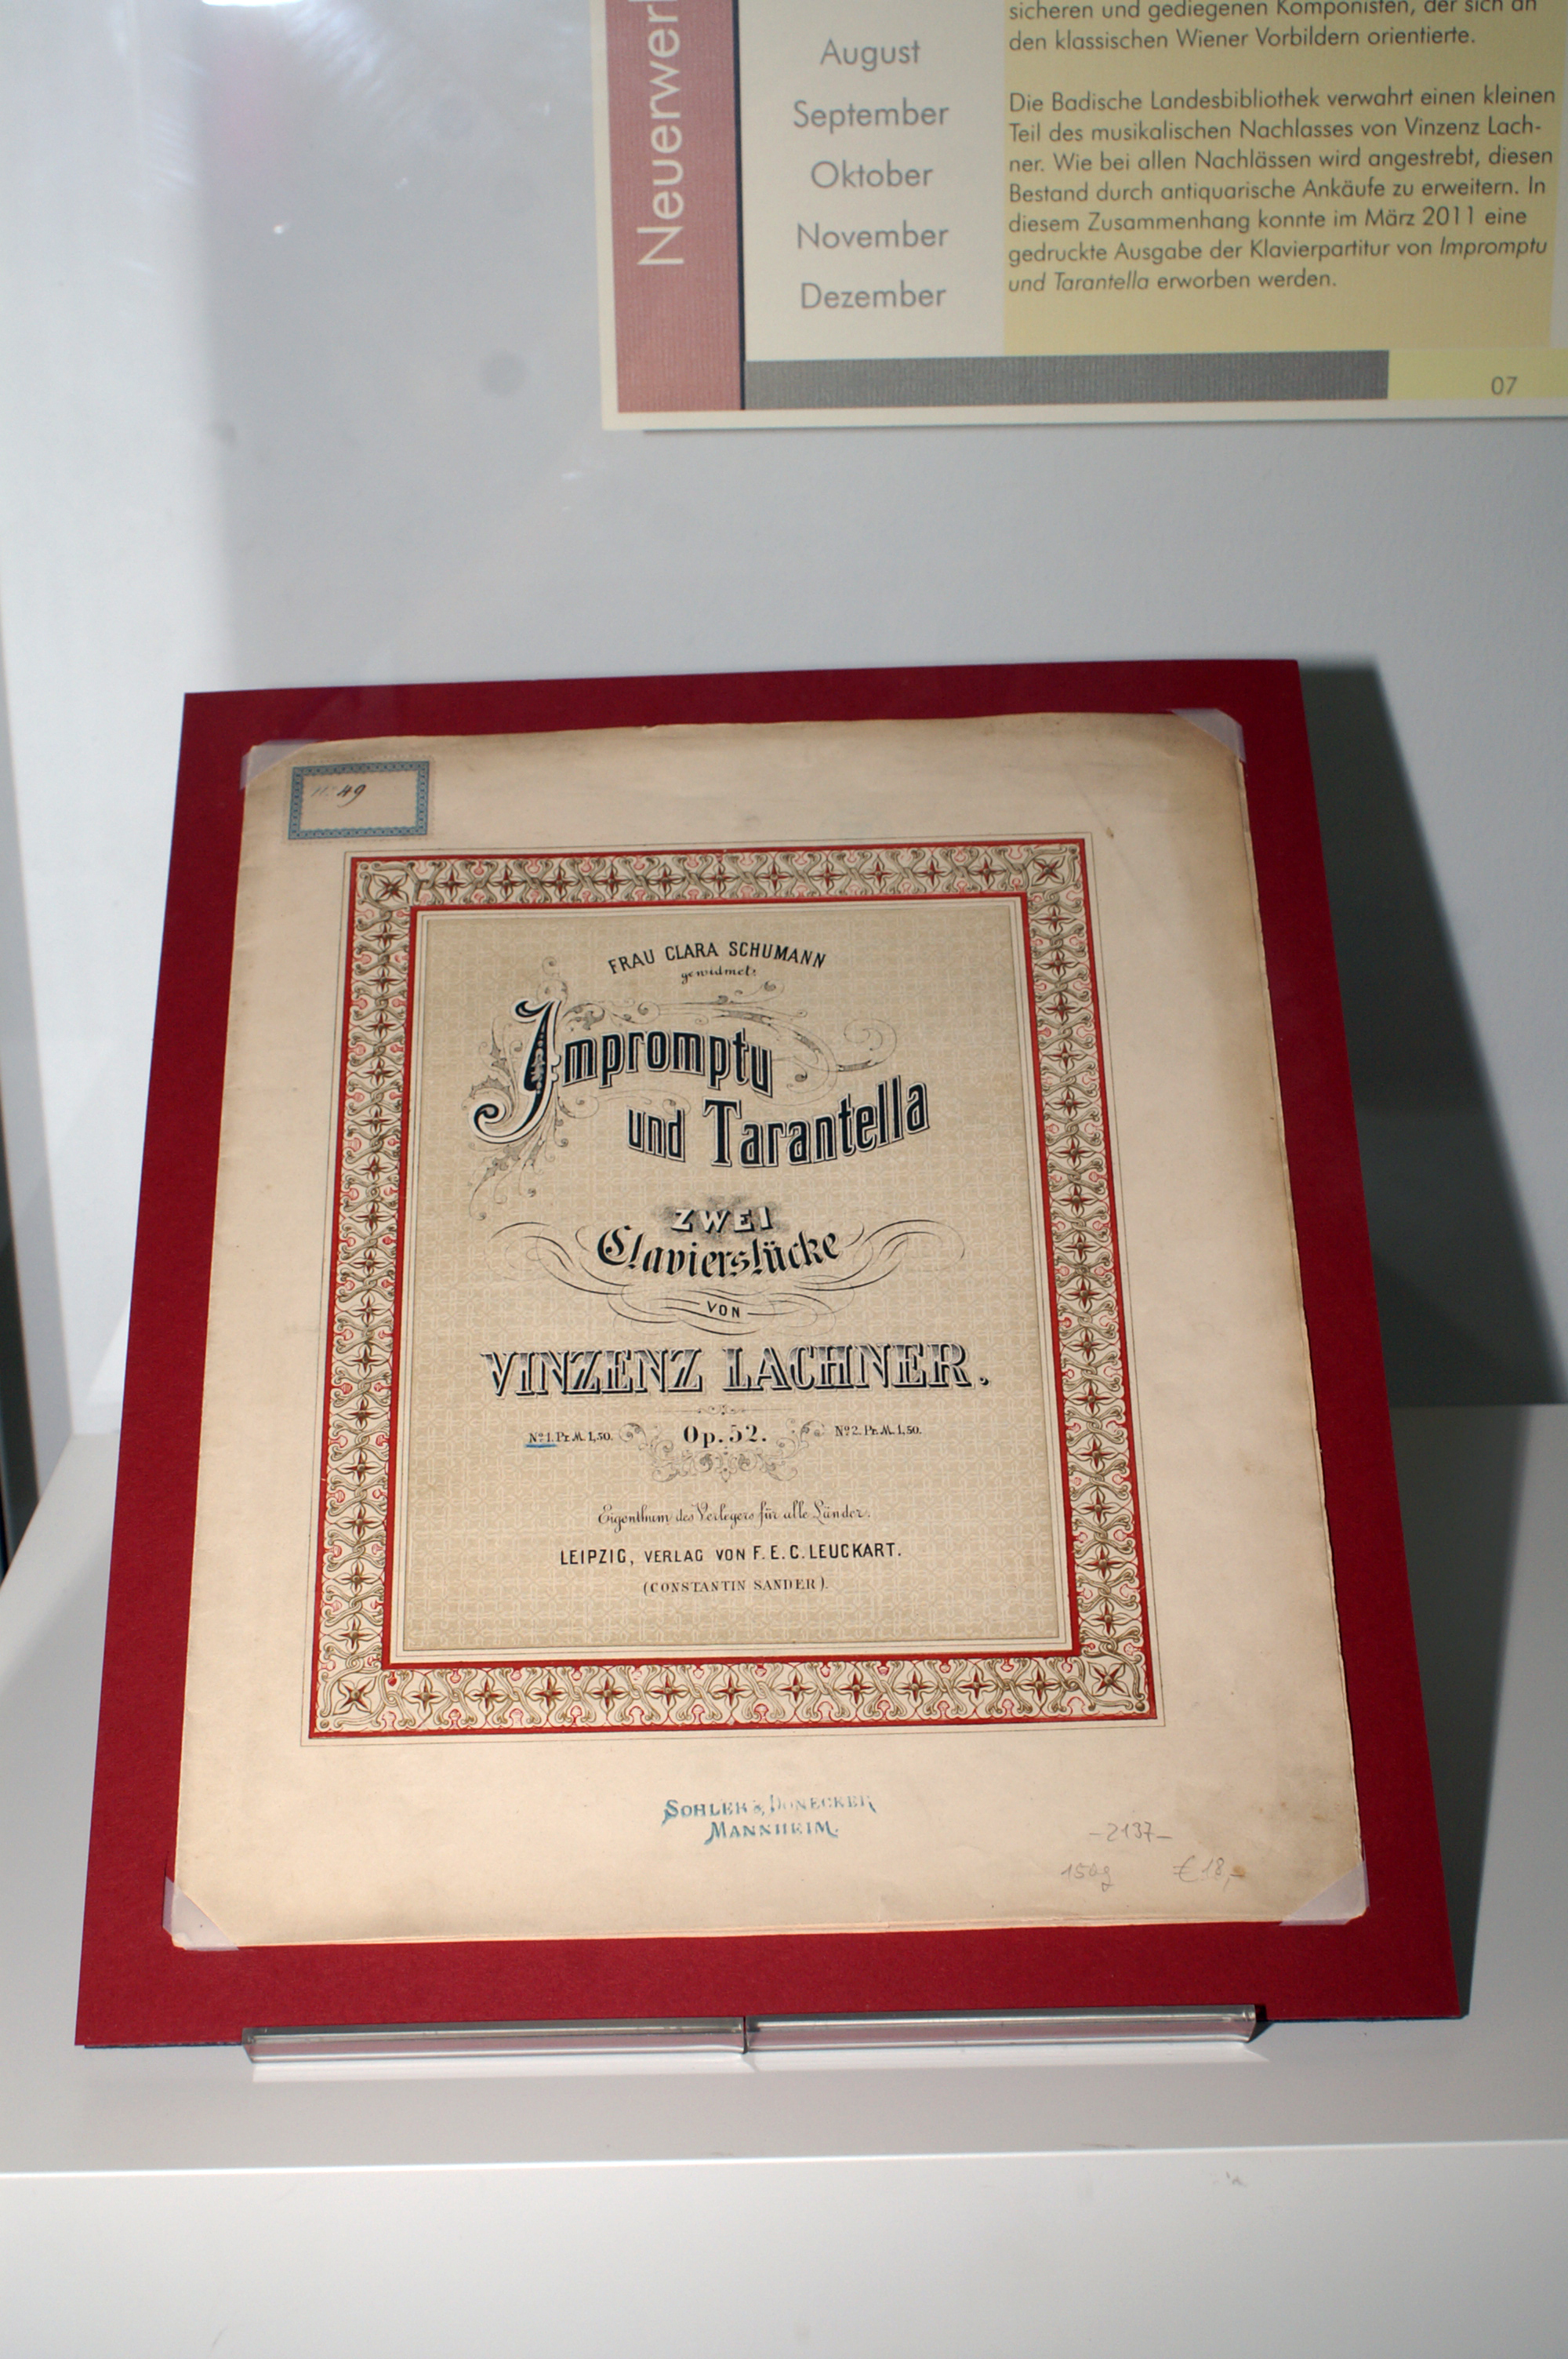 Vinzenz Lachner's Impromptu und Tarantella.